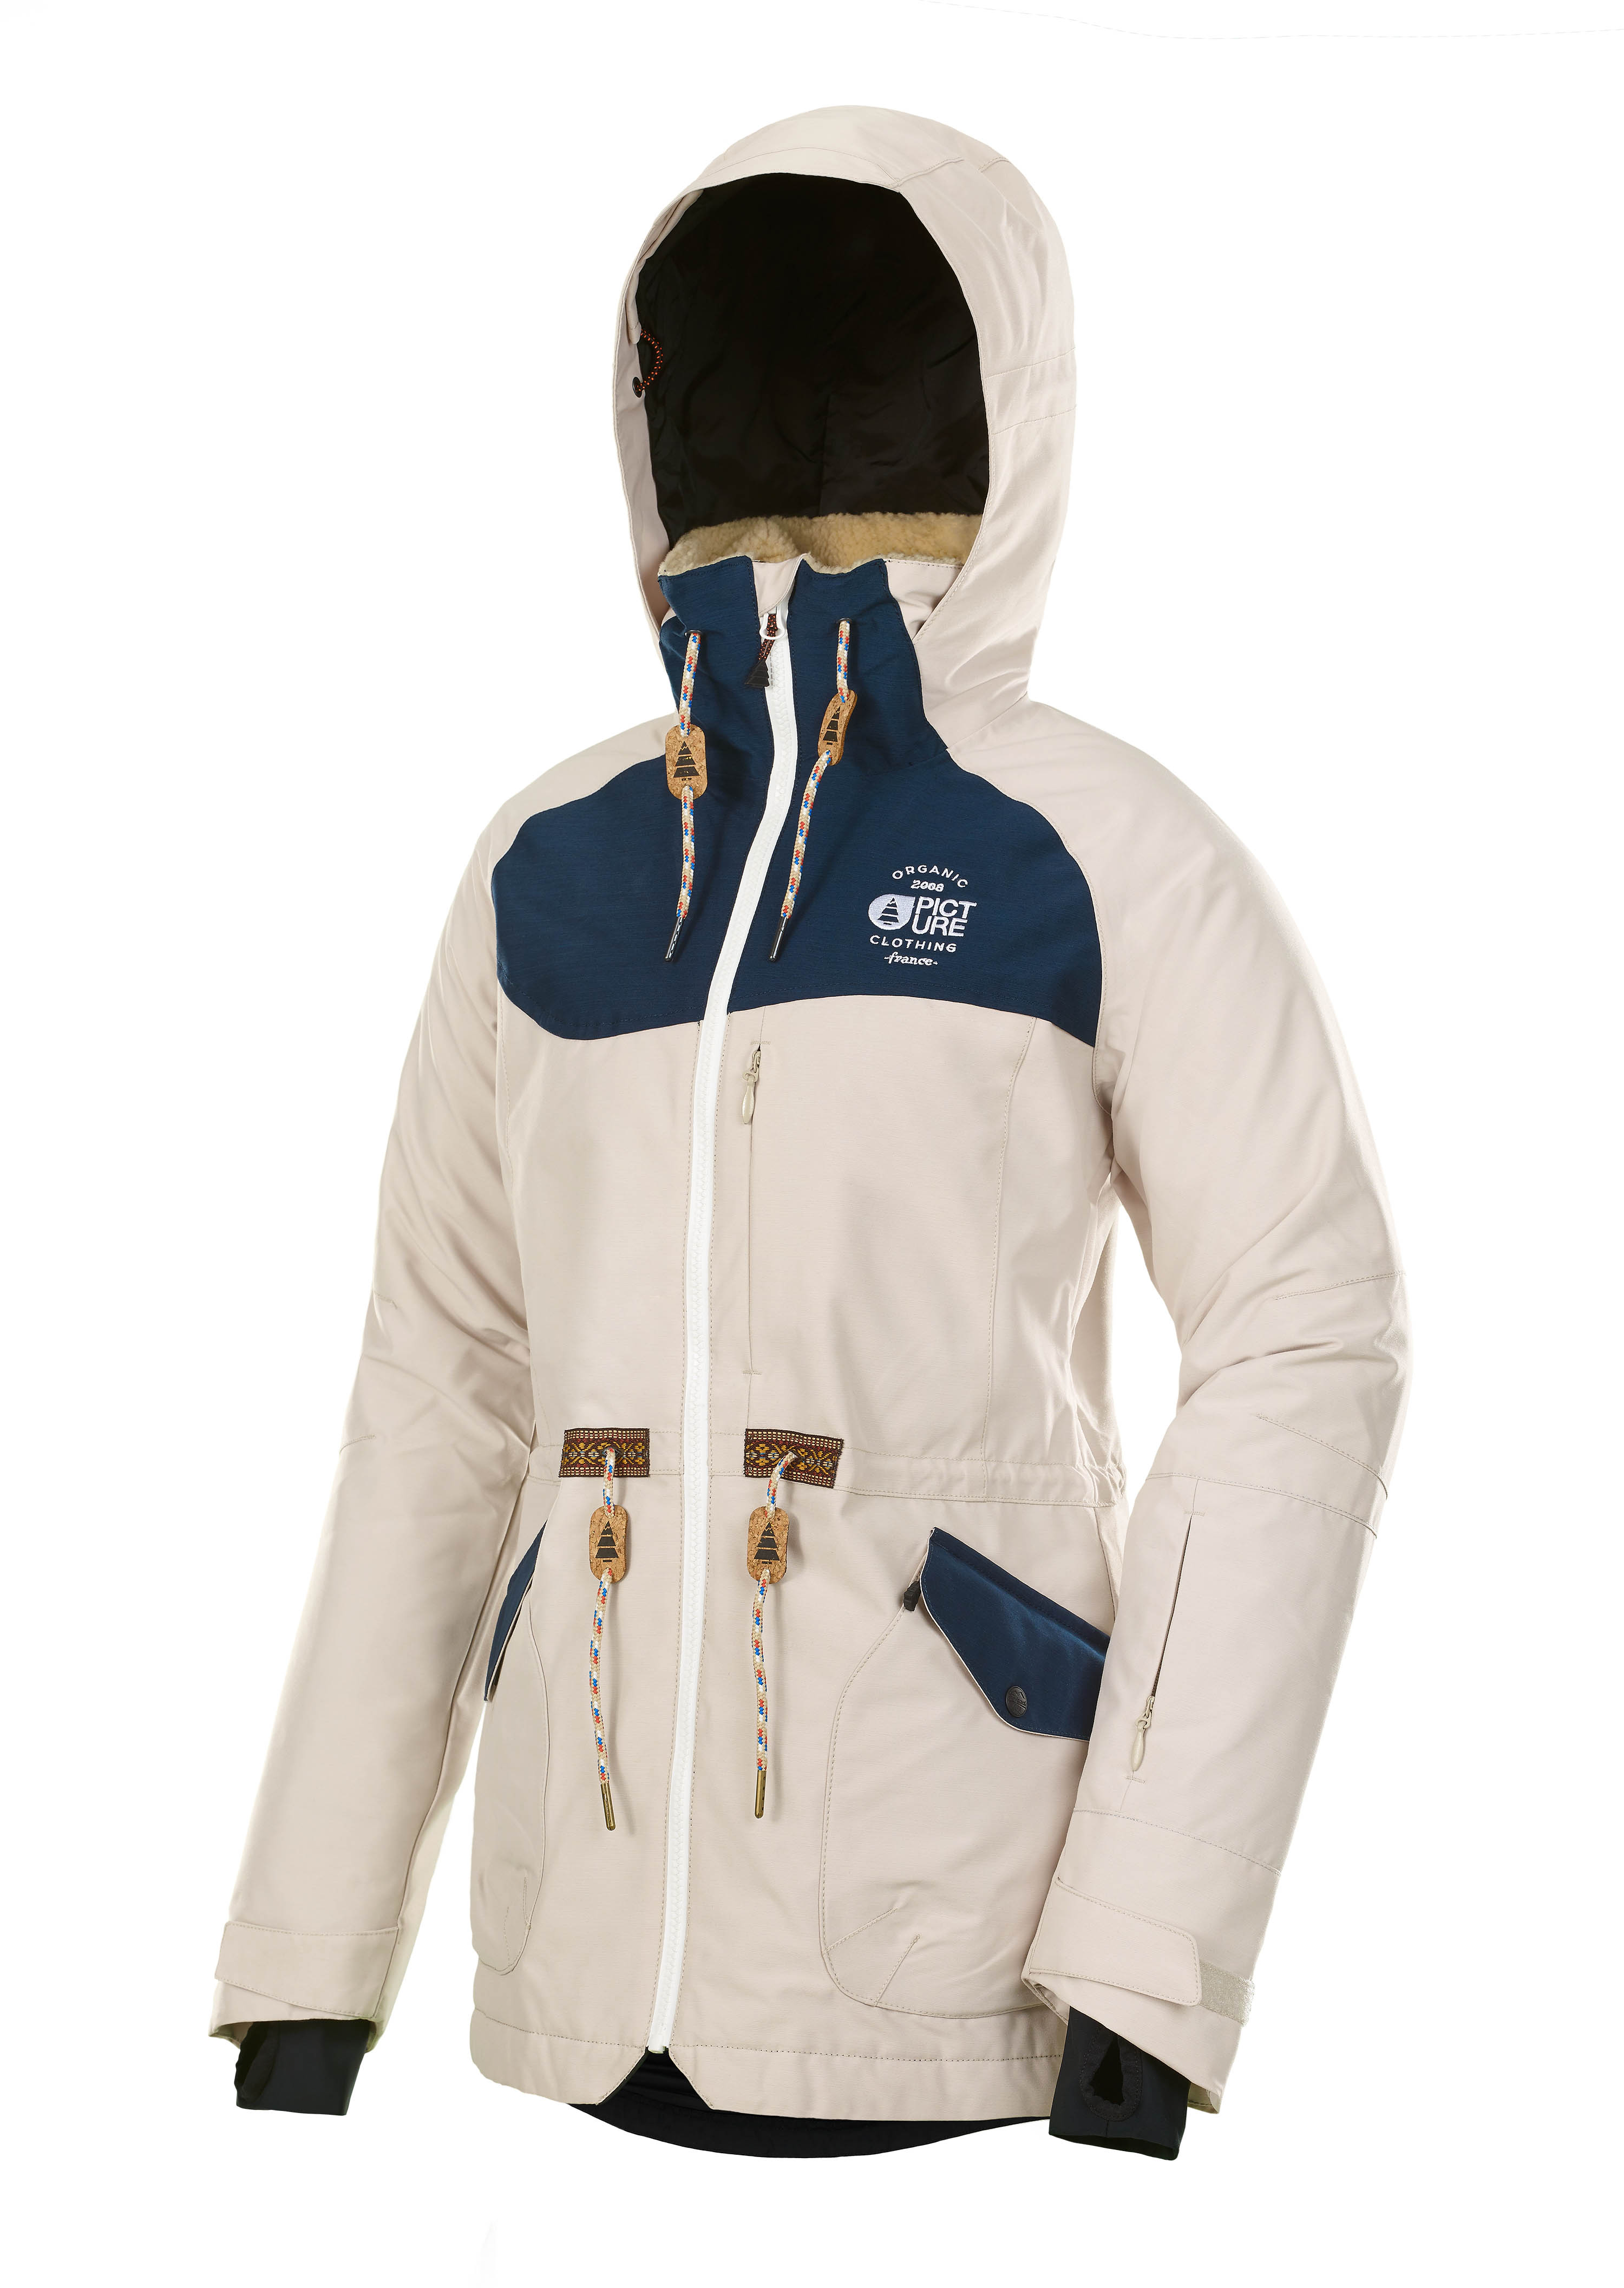 Ski- Outfitters Snowboardbekleidung - Vermietung - Online mieten für & PICTURE APPLY | DROPKID Damen beige Skijacke